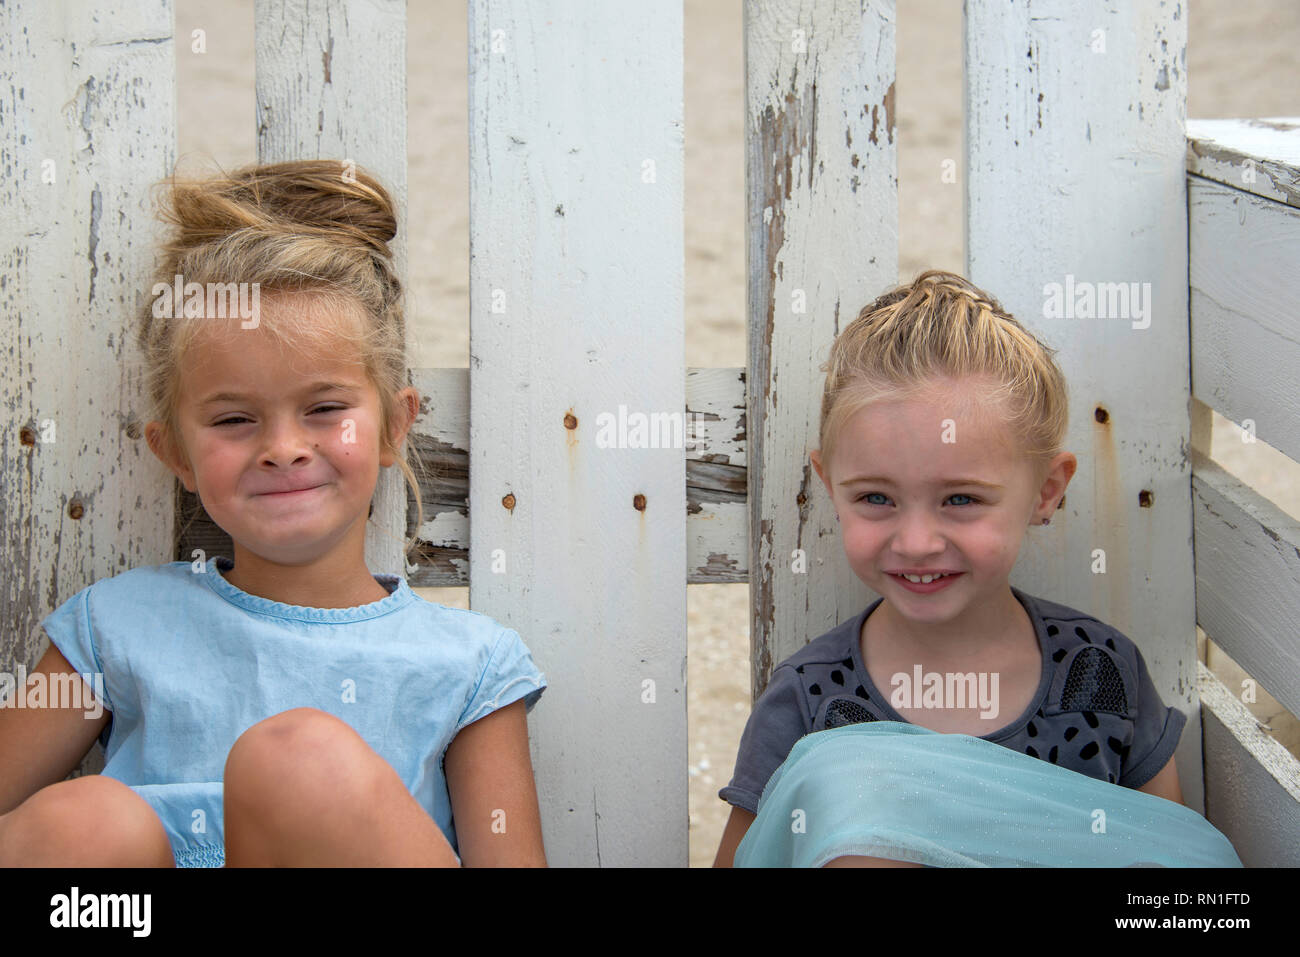 Rockanje,Olanda,29-aug-2015:twol lttle ragazze seduto su una sedia cameriera dal pallet e cercando e sorriso per la fotocamera Foto Stock